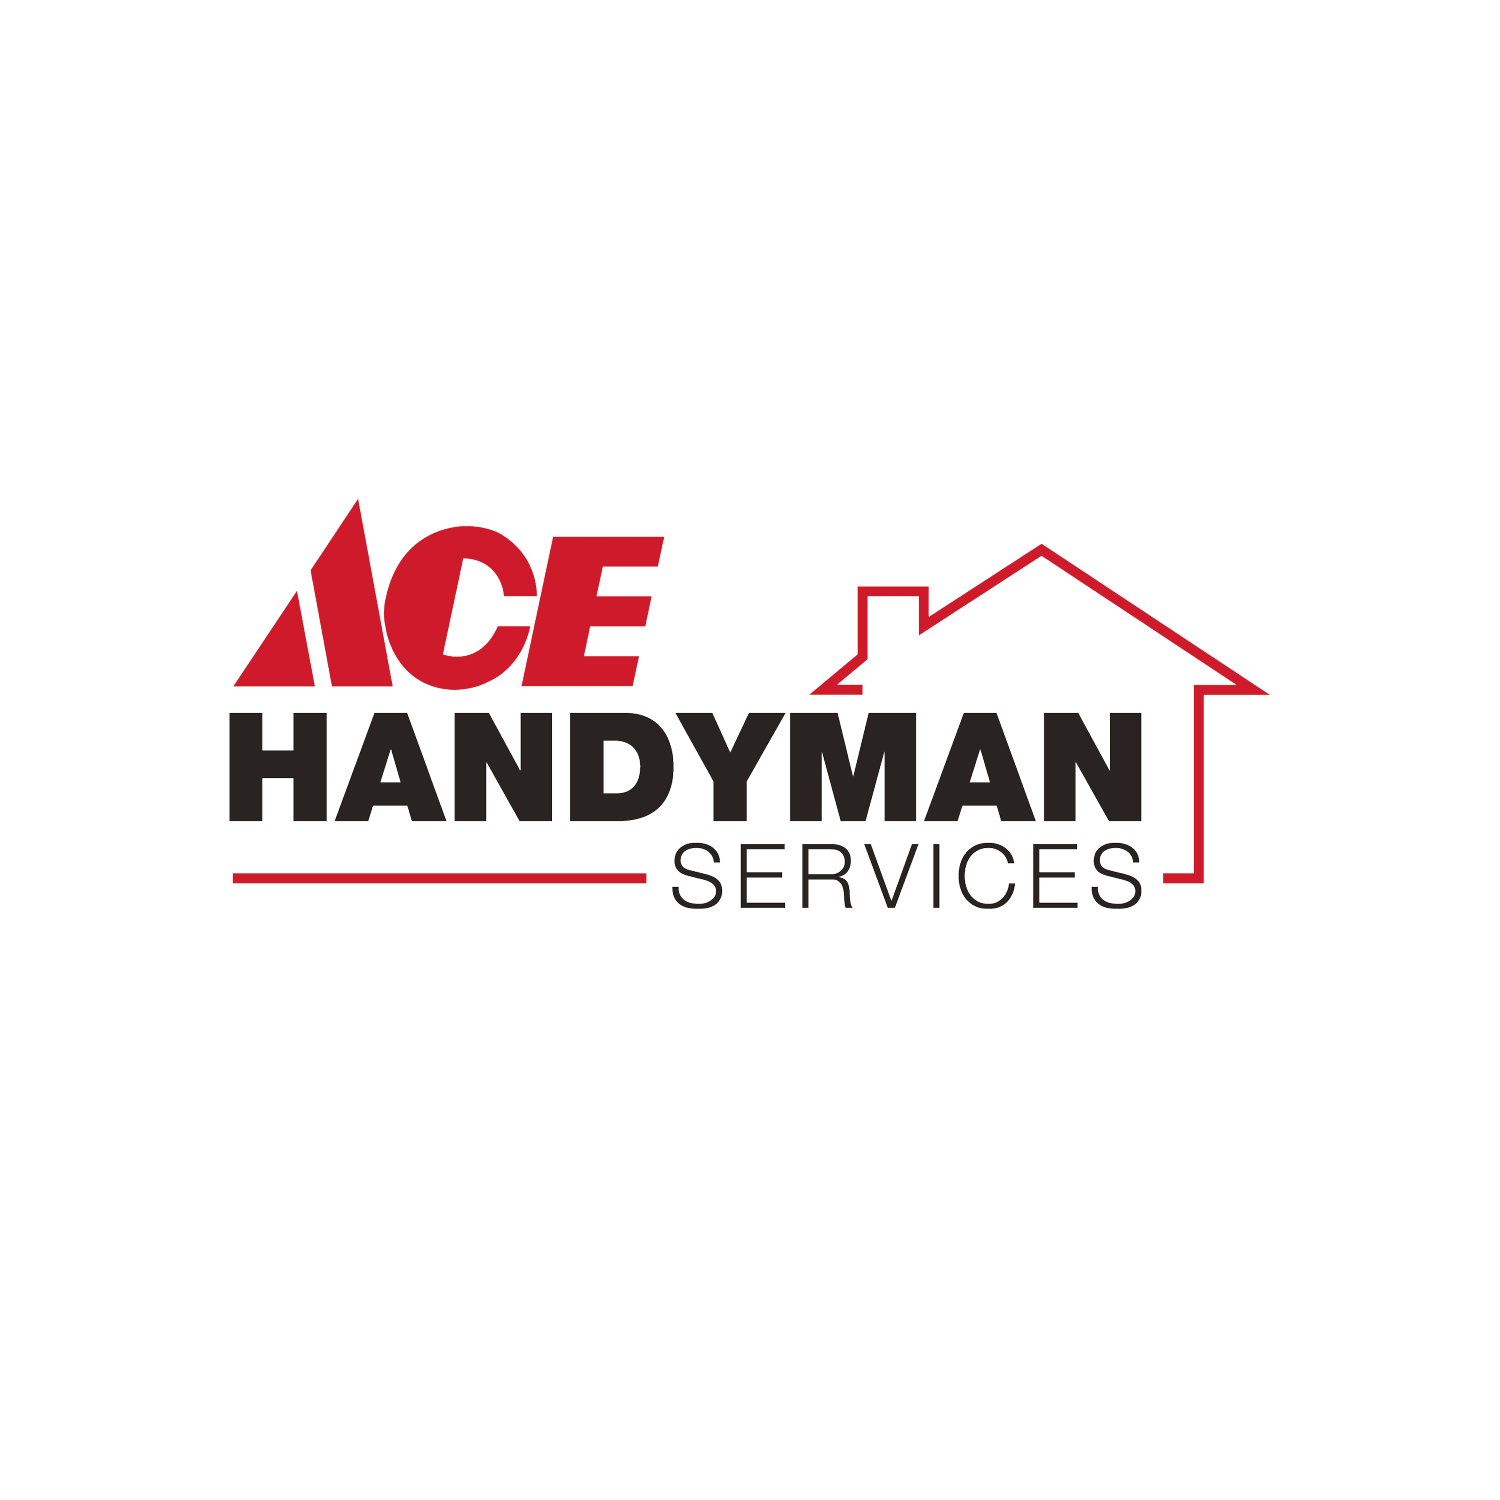 Ace Handyman Services Seaford Rehoboth - Dagsboro, DE 19939 - (302)217-3441 | ShowMeLocal.com